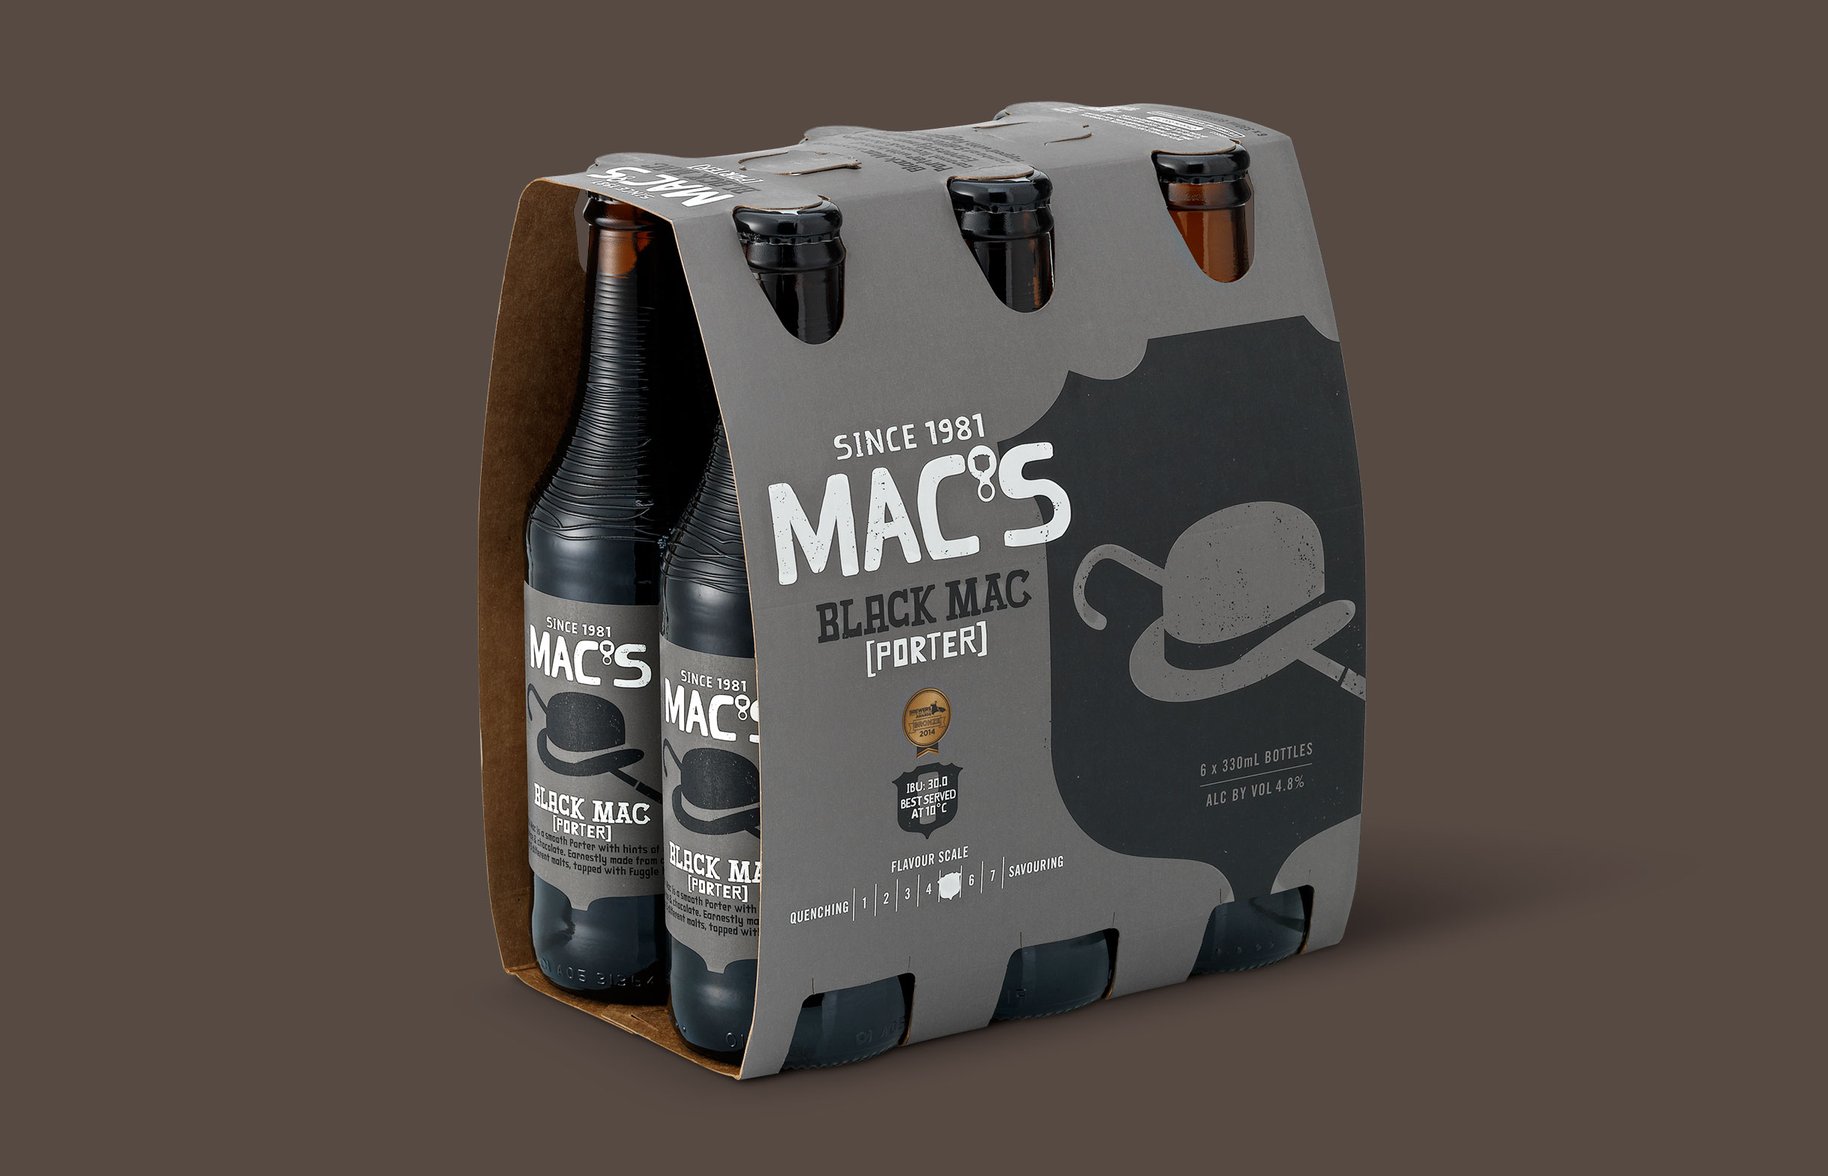 Macs Beer 6 pack black mac packaging